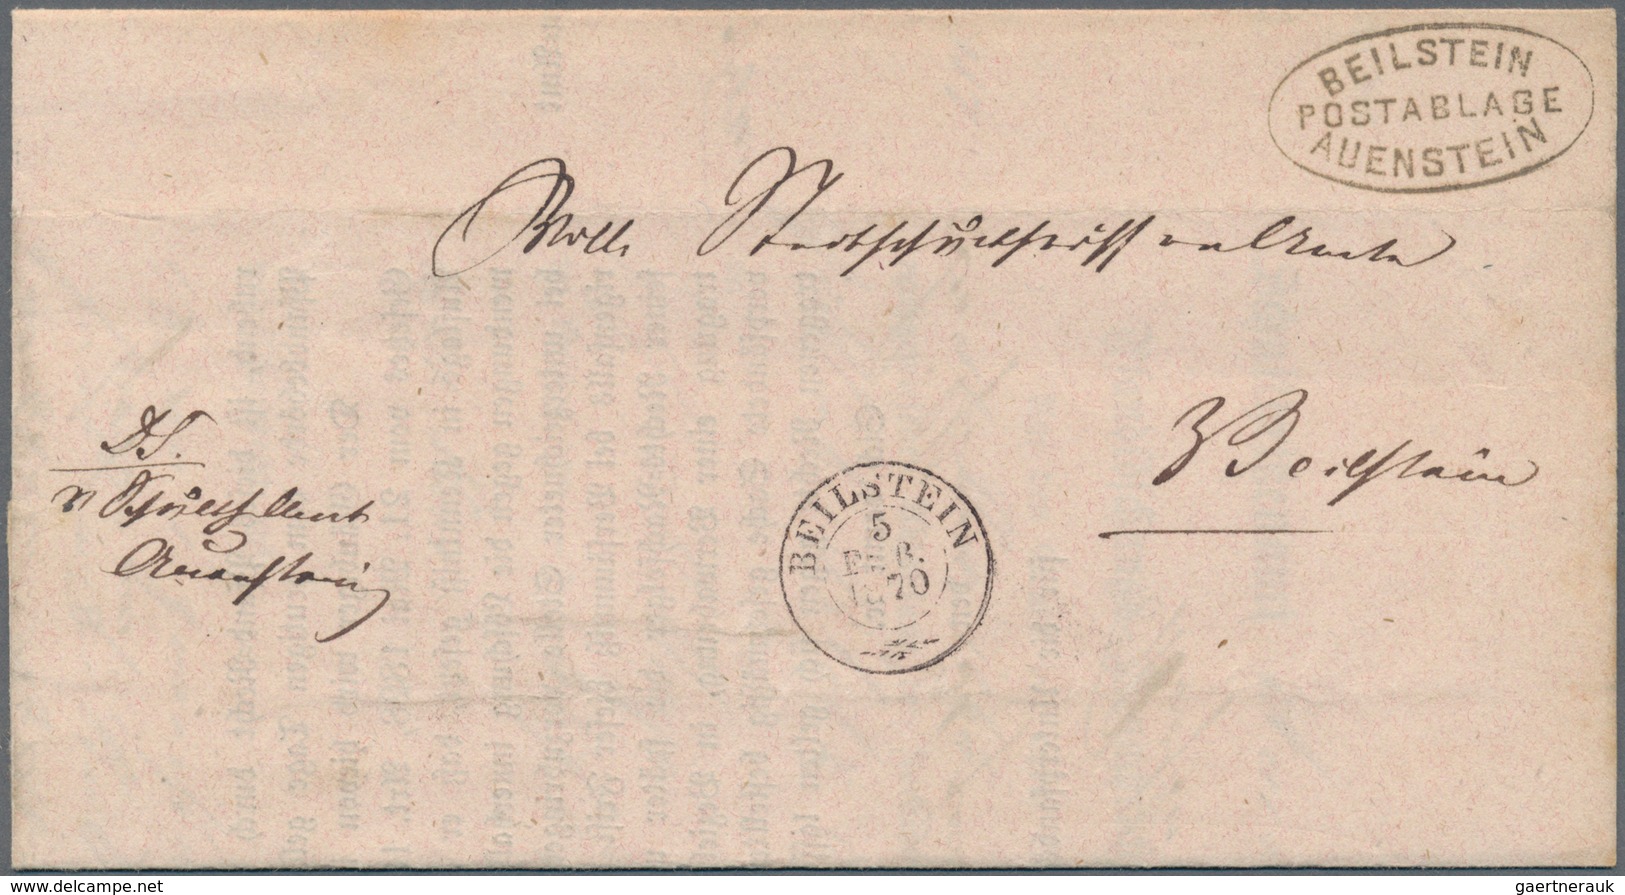 31329 Württemberg - Vorphilatelie: 1800/1870 (ca.), interessante Sammlung von über 70 Belegen mit u.a. vie